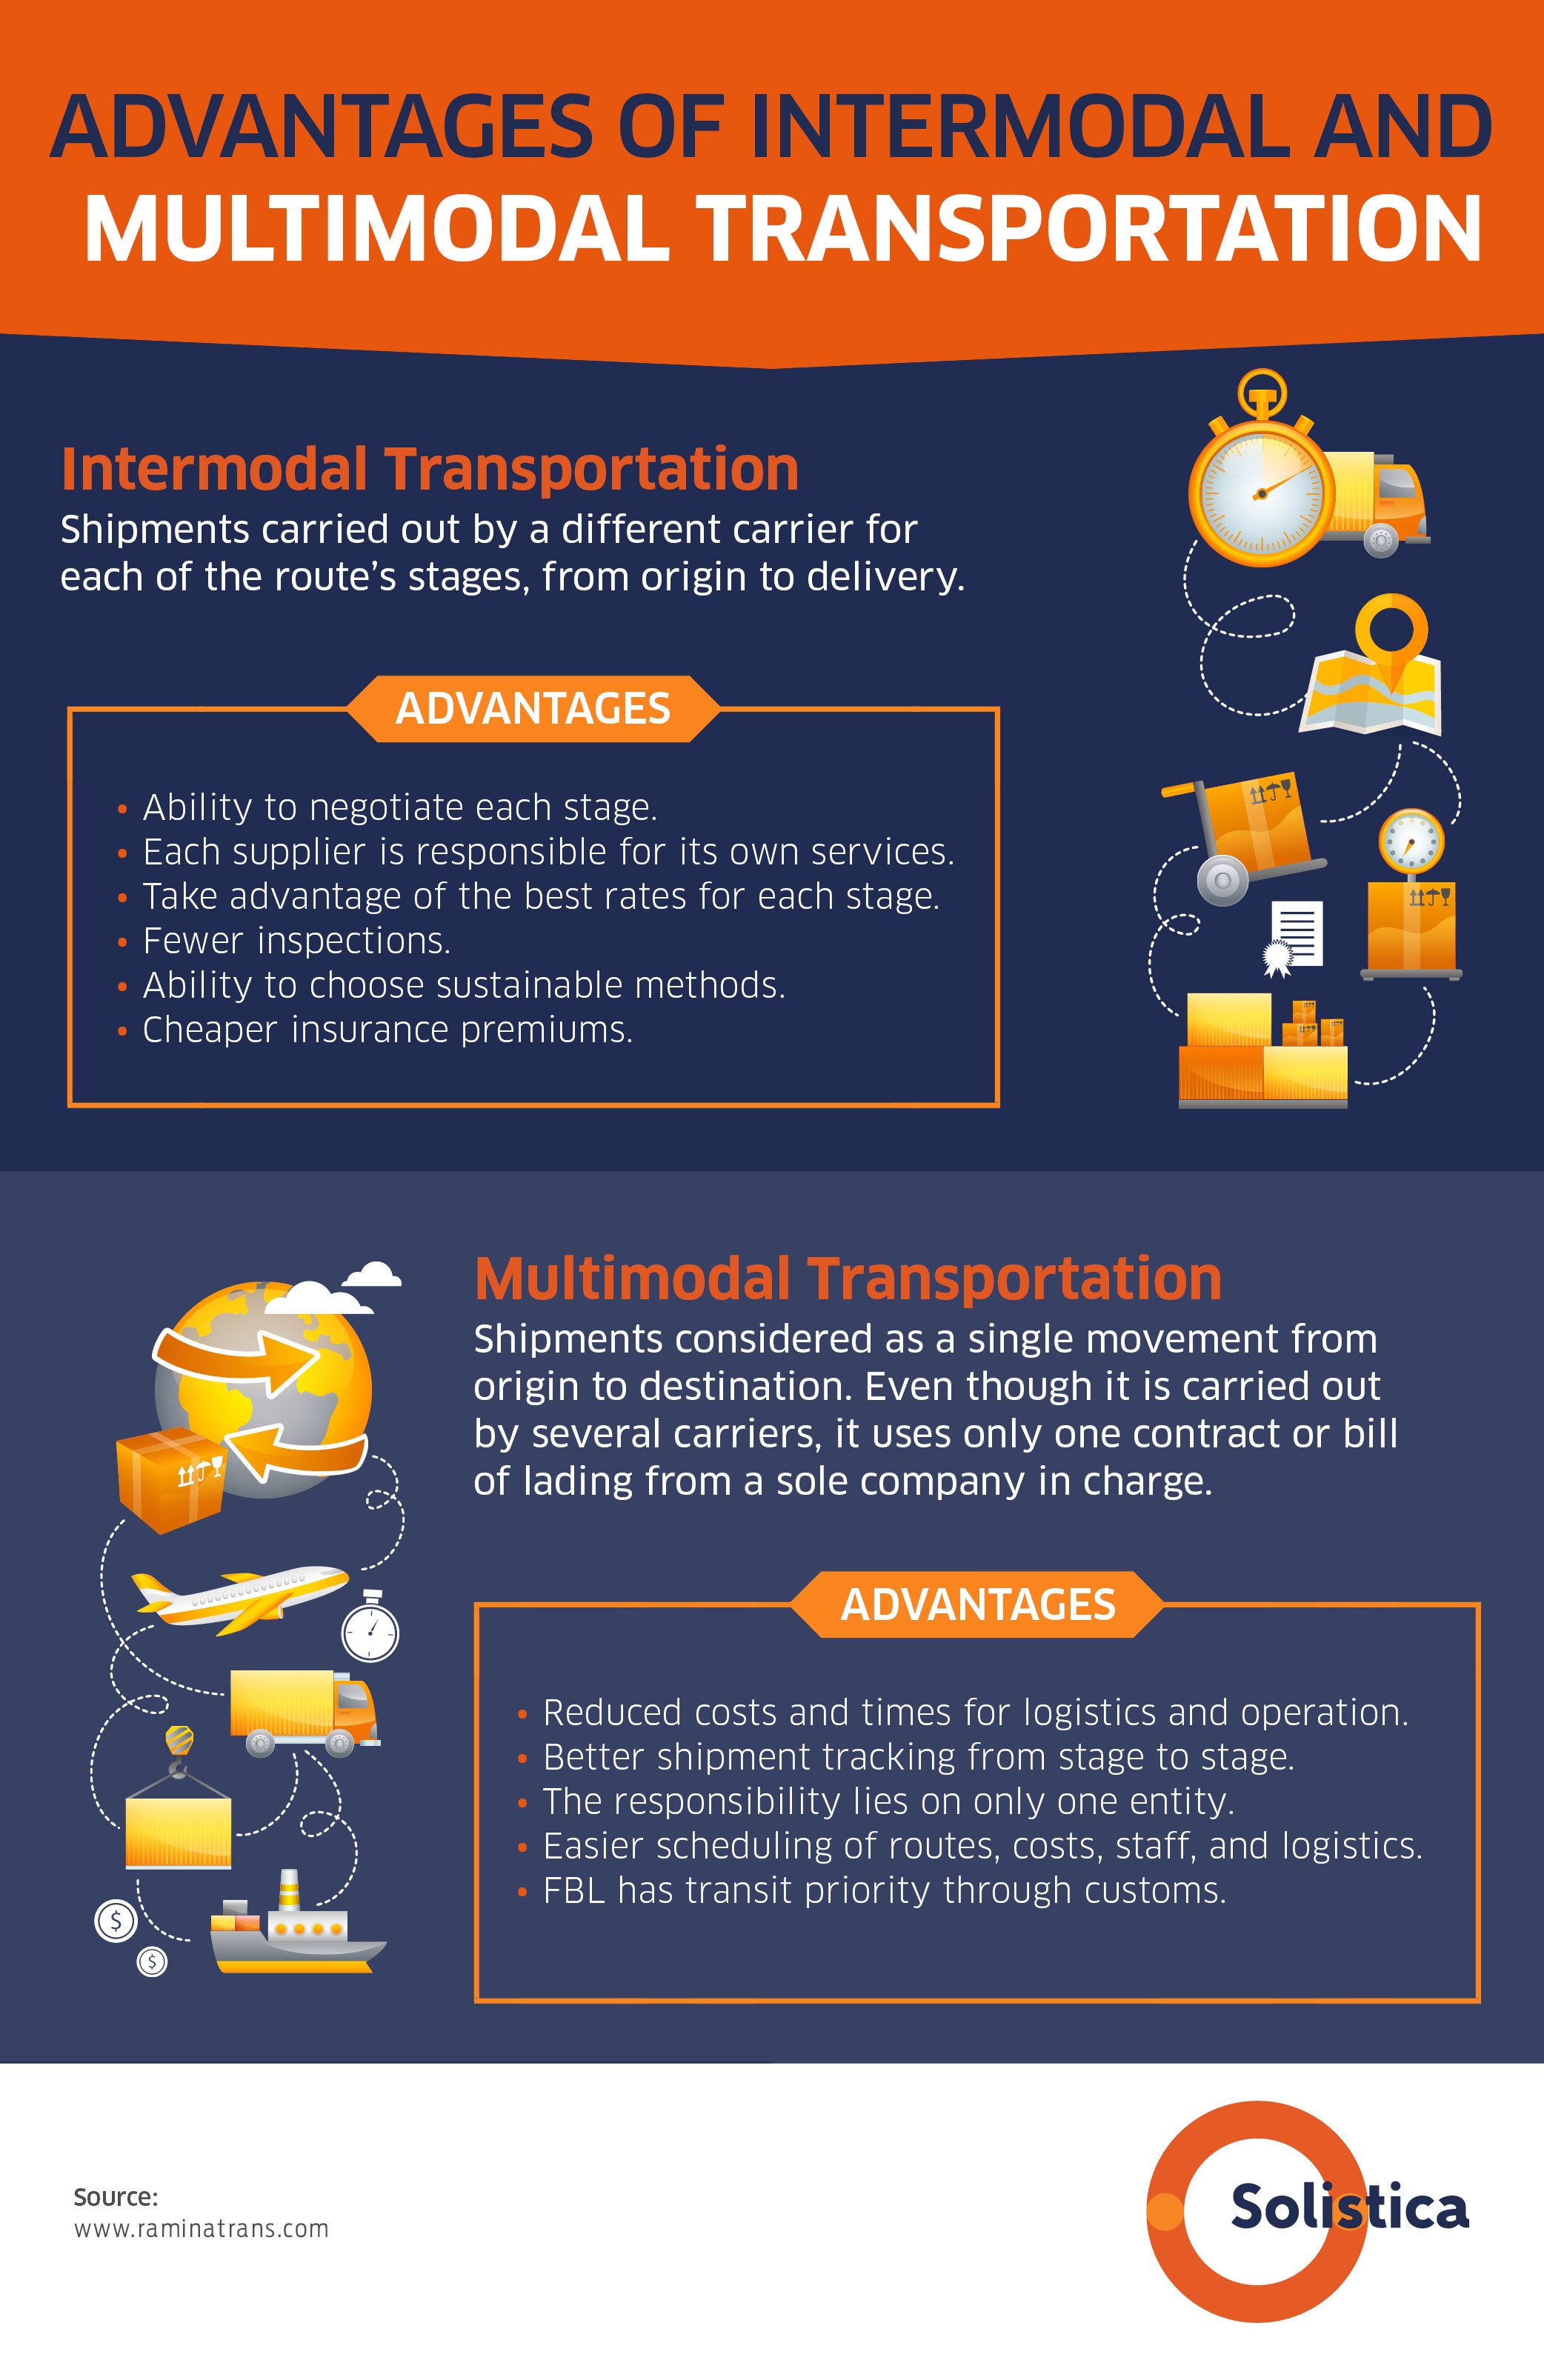 intermodal transportation research paper topics